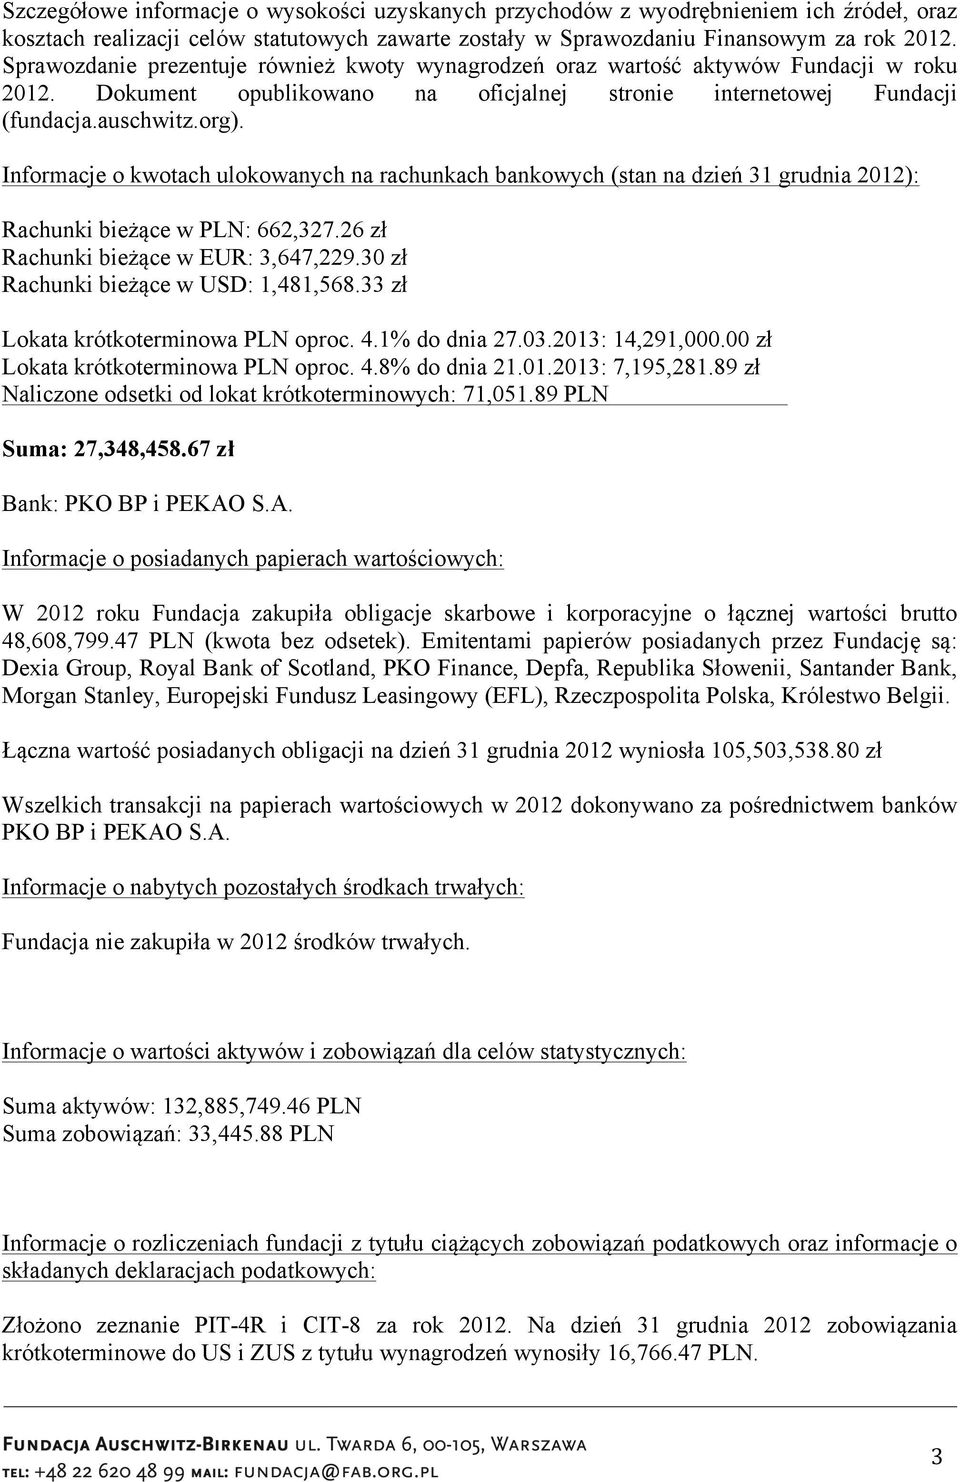 Informacje o kwotach ulokowanych na rachunkach bankowych (stan na dzień 31 grudnia 2012): Rachunki bieżące w PLN: 662,327.26 zł Rachunki bieżące w EUR: 3,647,229.